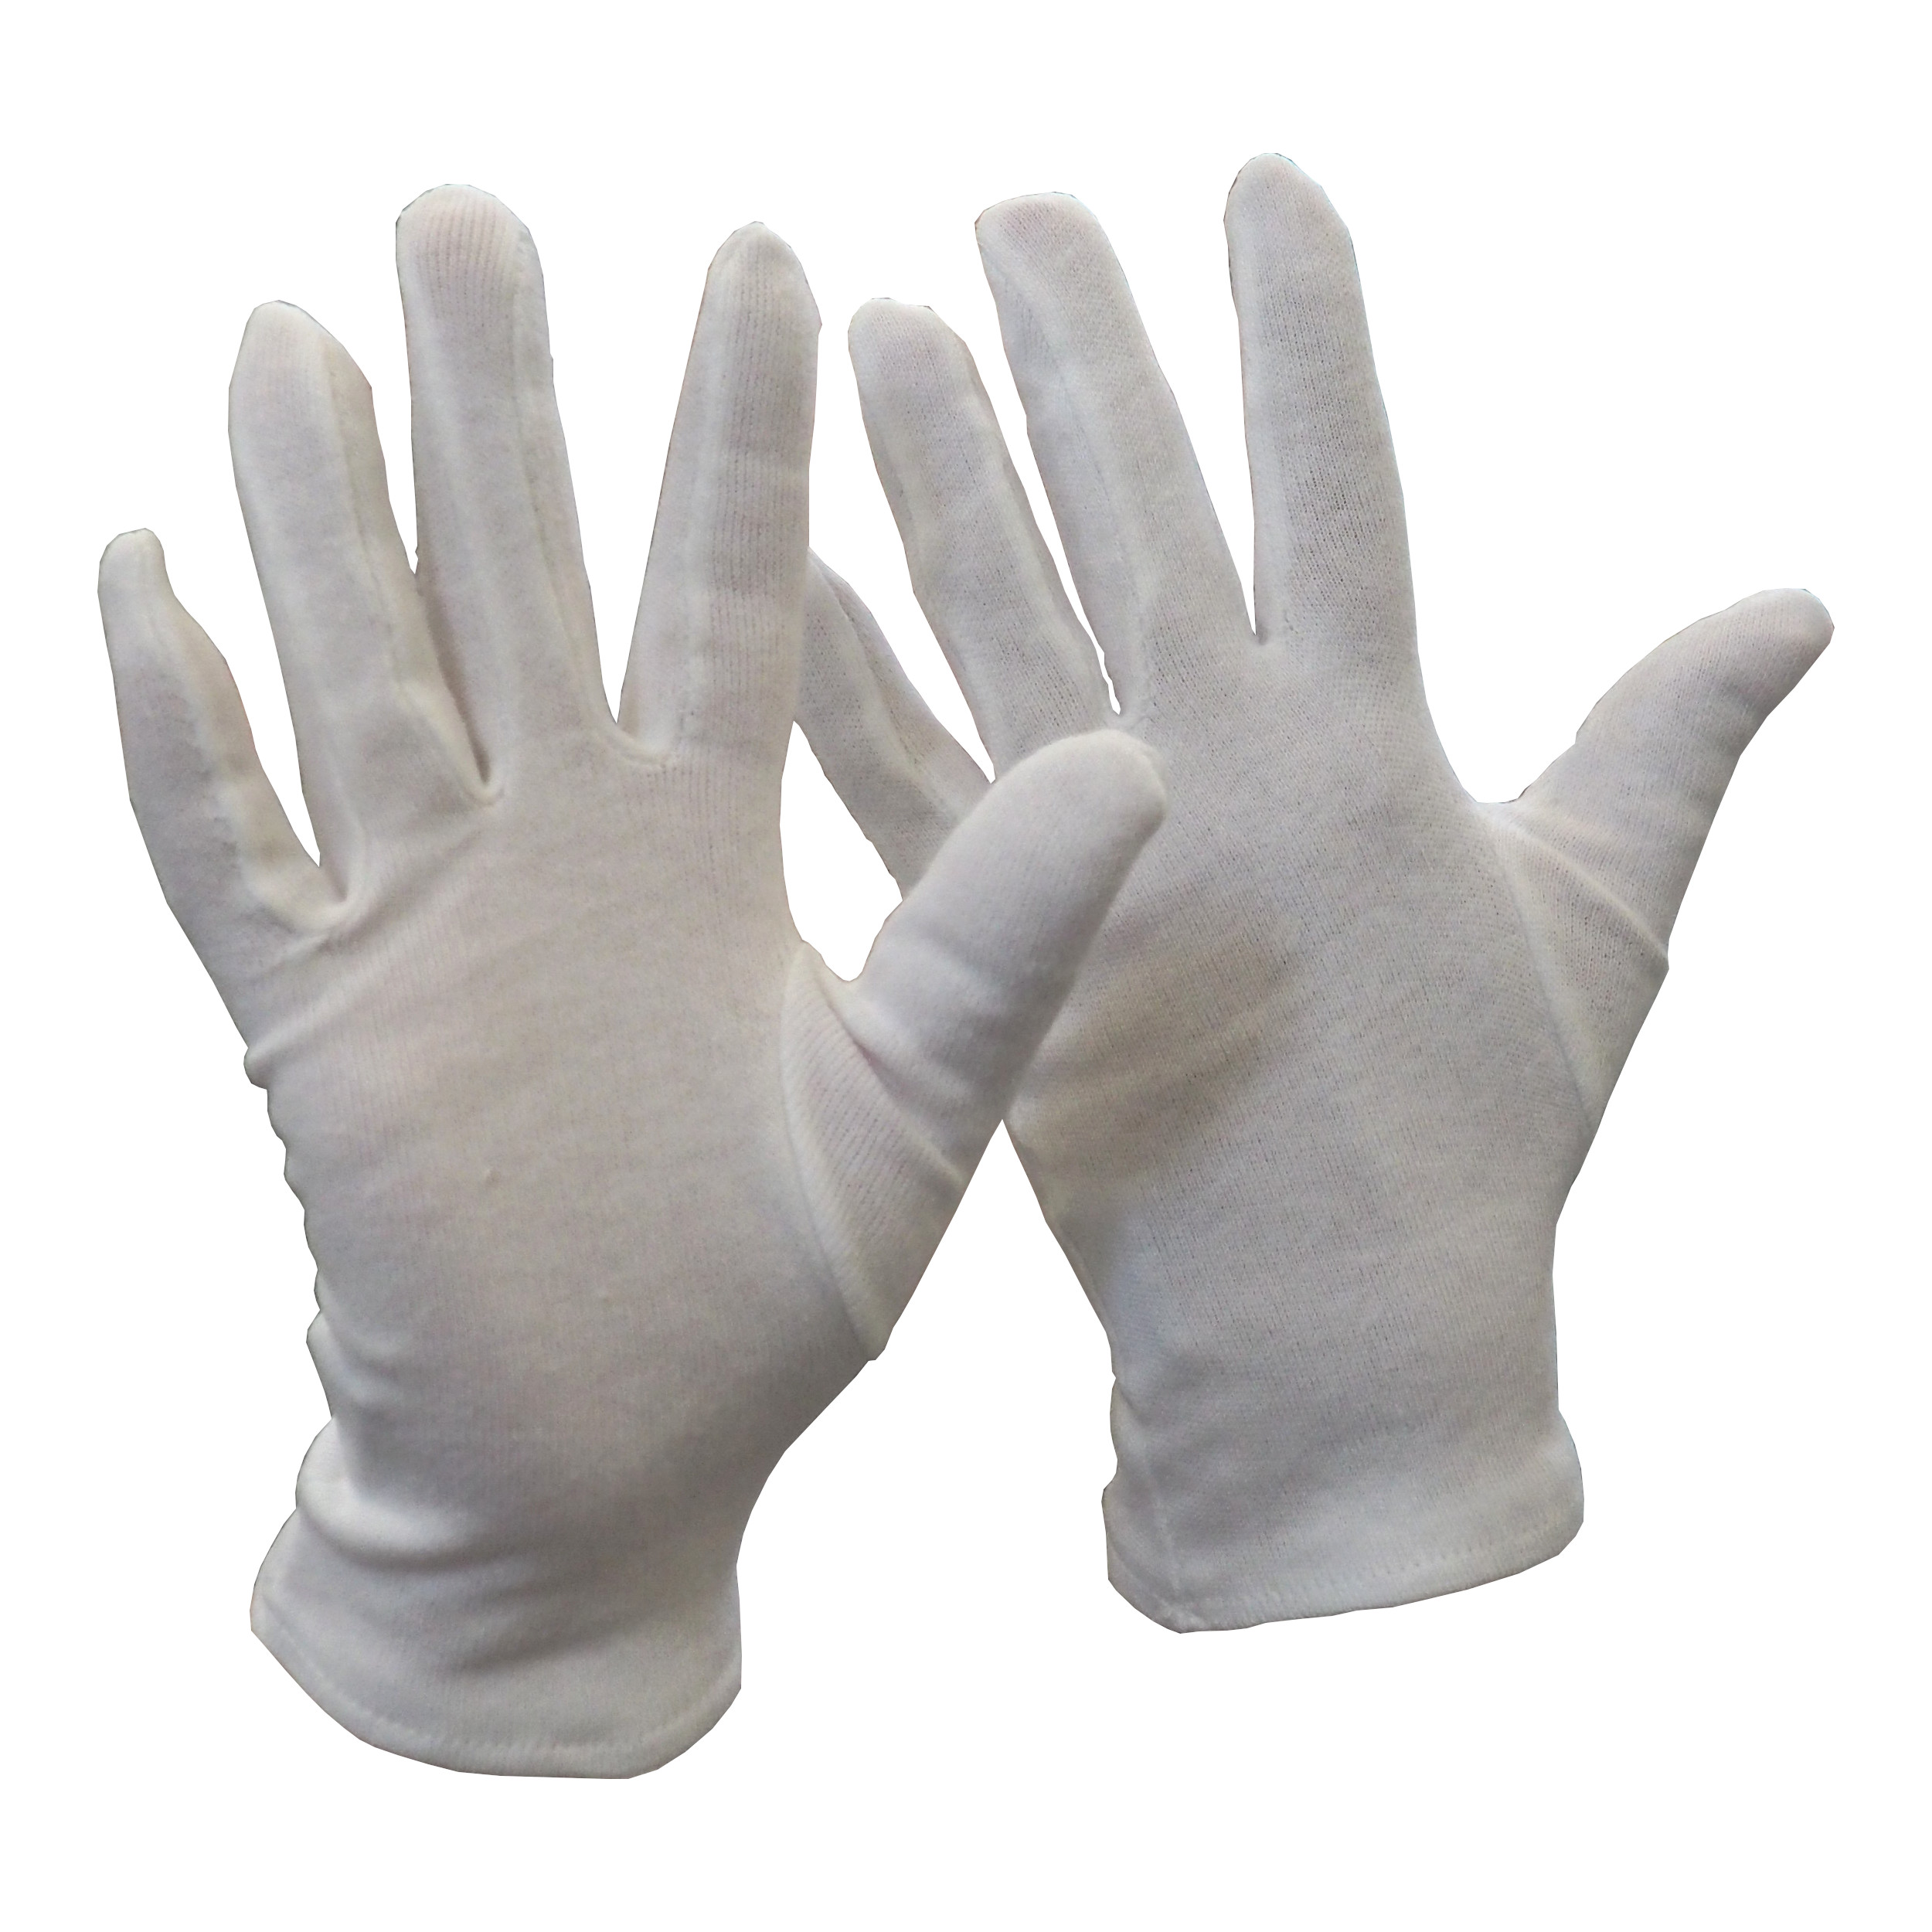 rukavice FAWA, textilní, bílé, velikost 8 0.02 Kg TOP Sklad4 606072 44